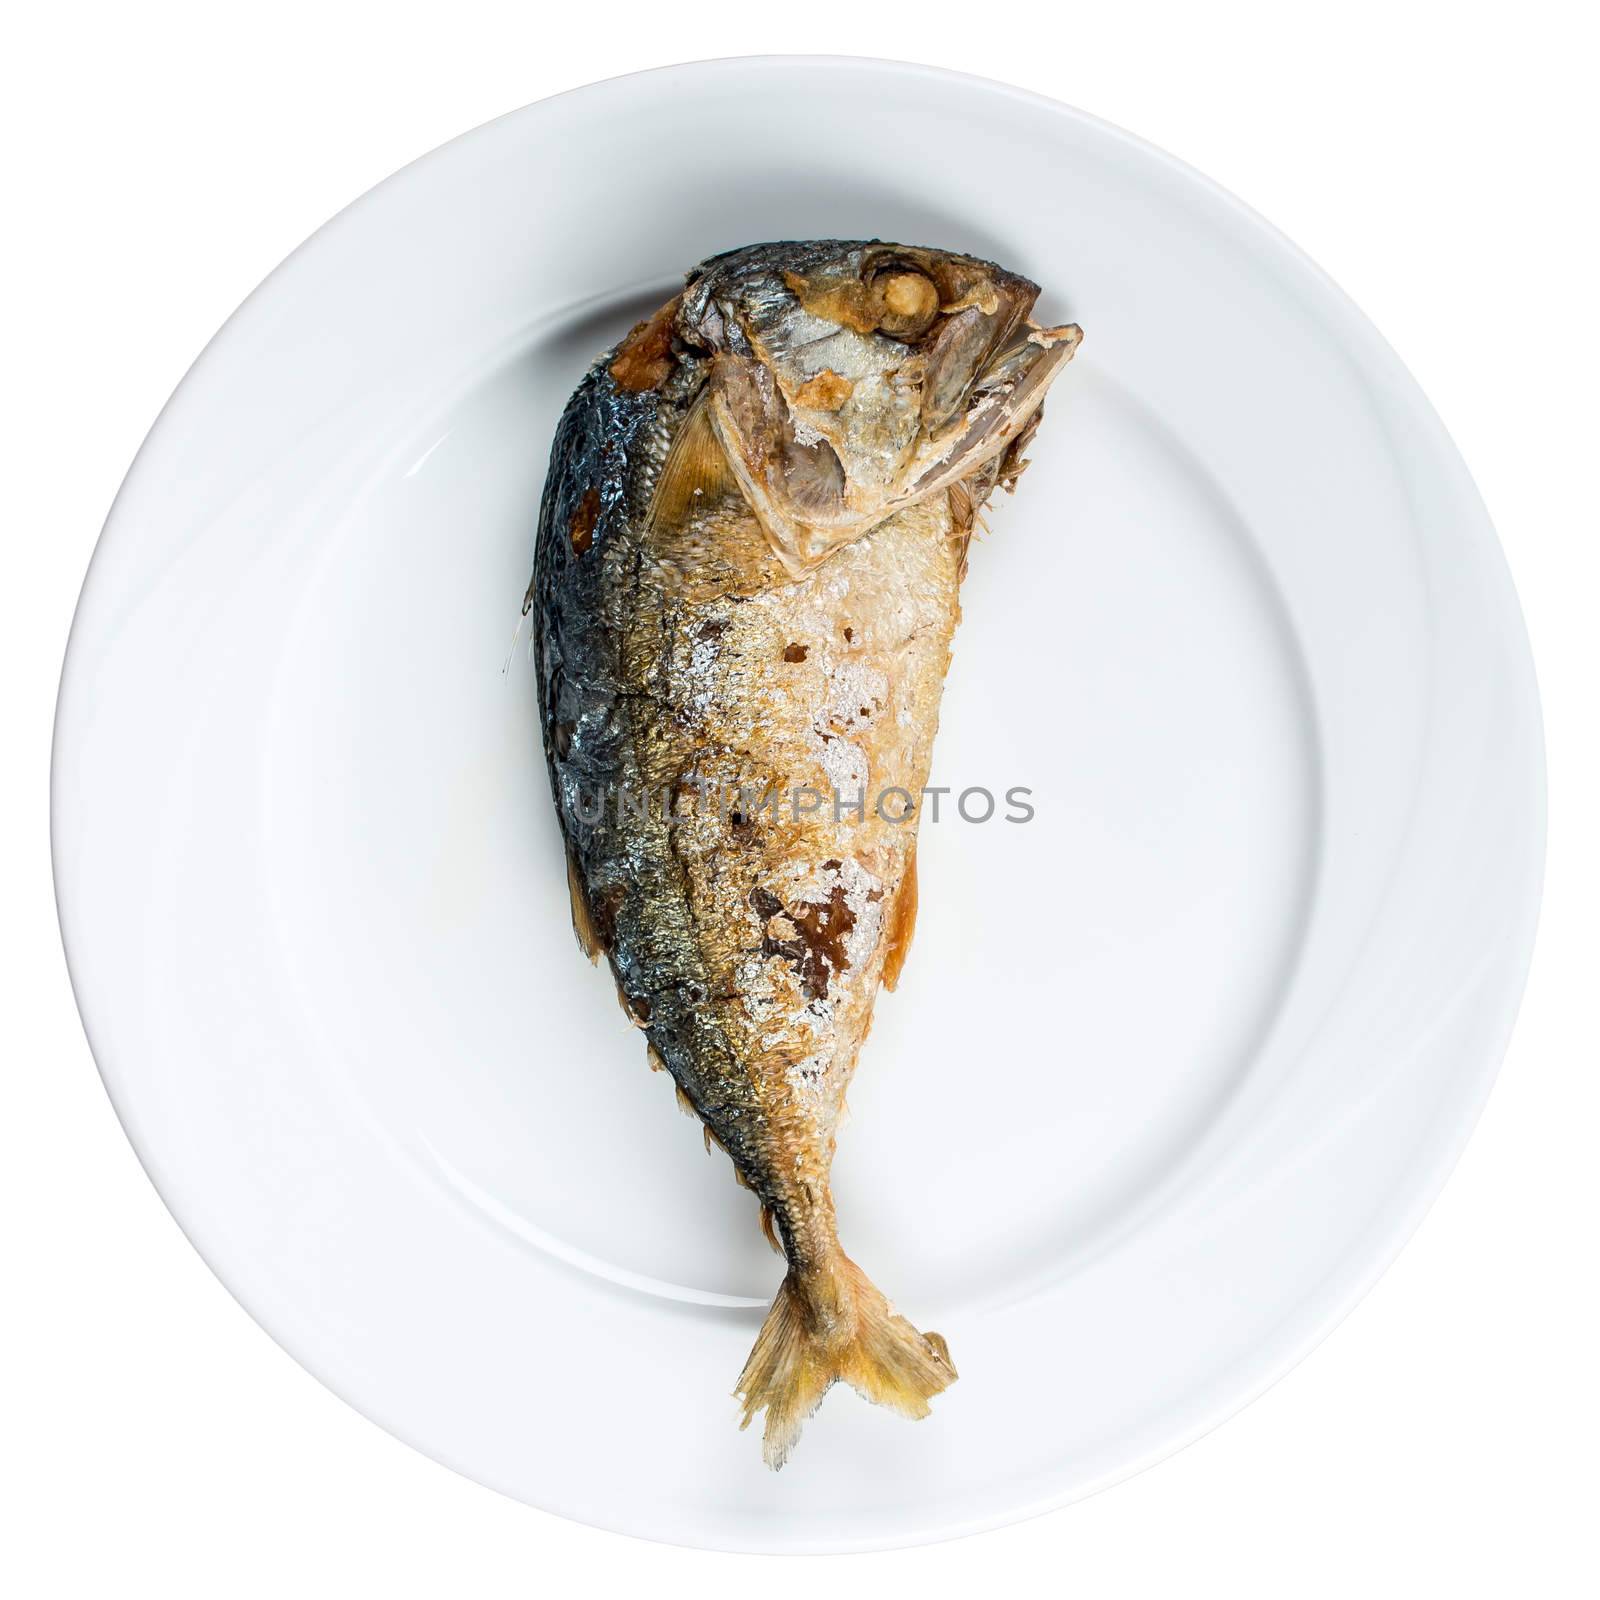 Fried mackerel on white dish , favorite food of Thai people